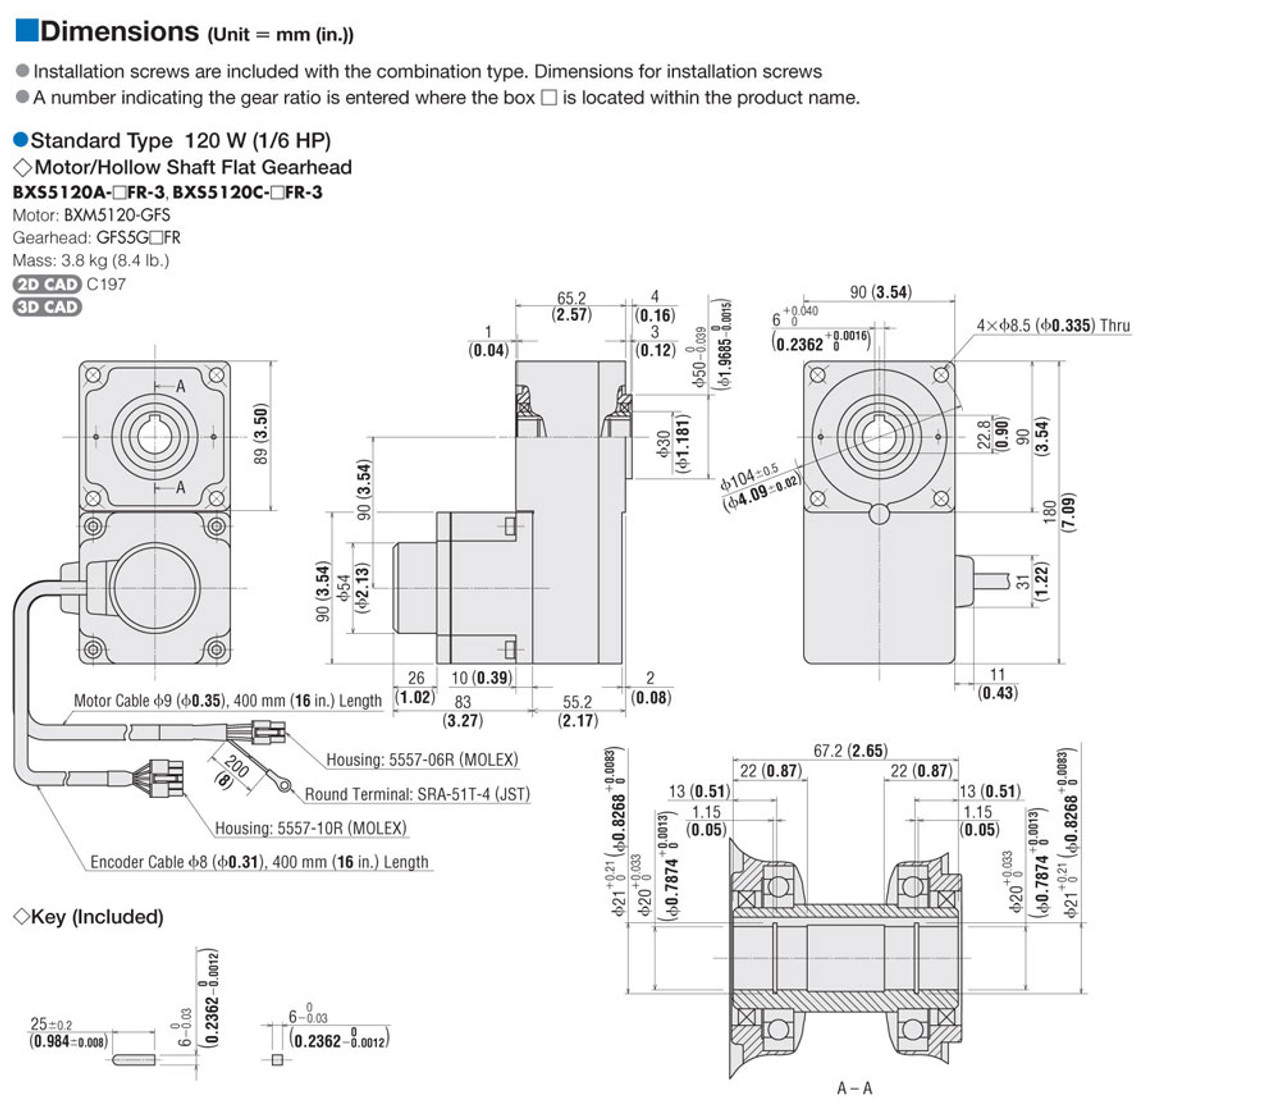 BXS5120C-10FR - Dimensions